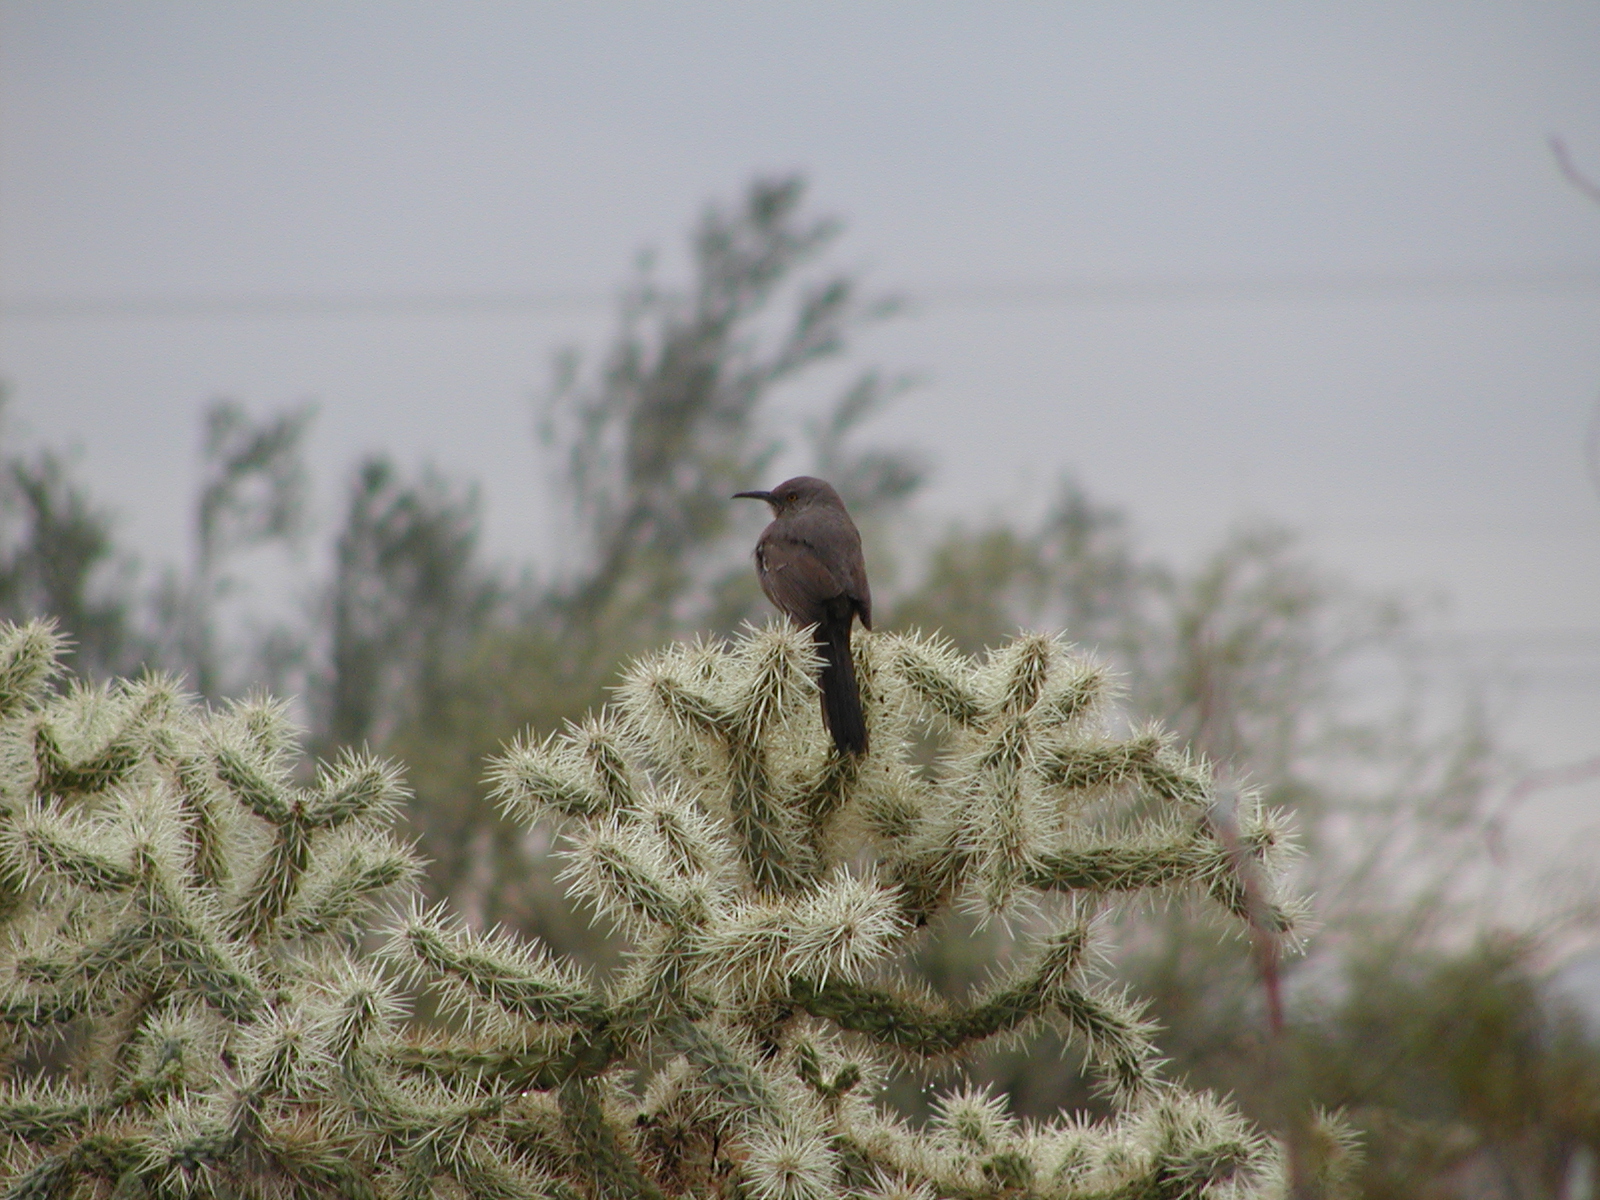 Bird on a cactus #2